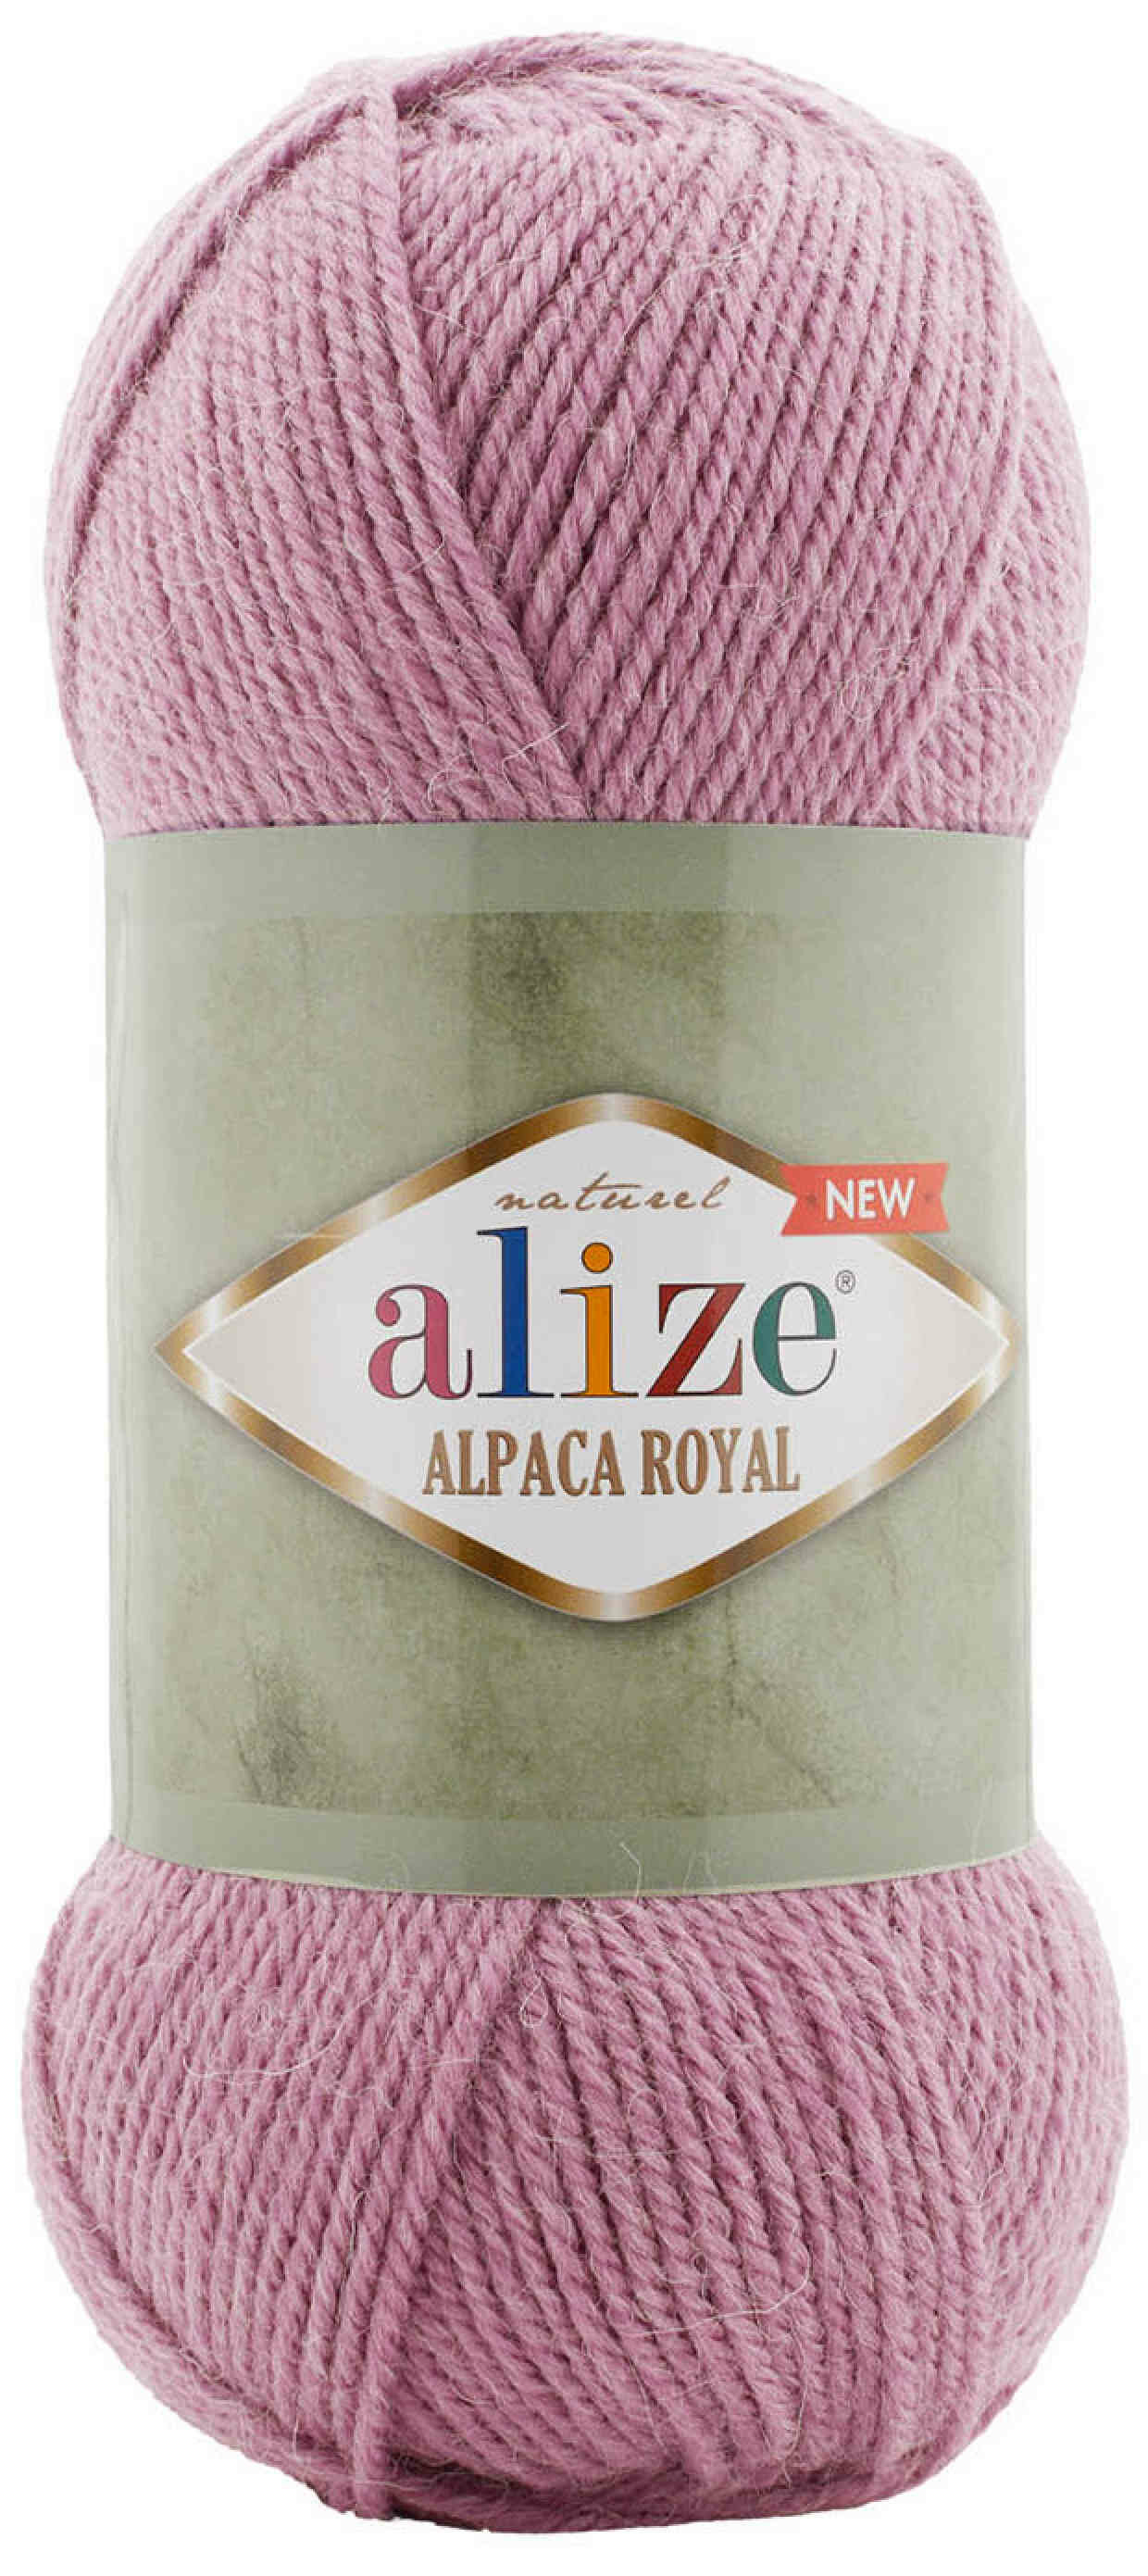 Пряжа Alize Alpaca Royal NEW дымчато-розовый (269), 55%акрил/30%шерсть/15%альпака, 250м, 100г, 2шт